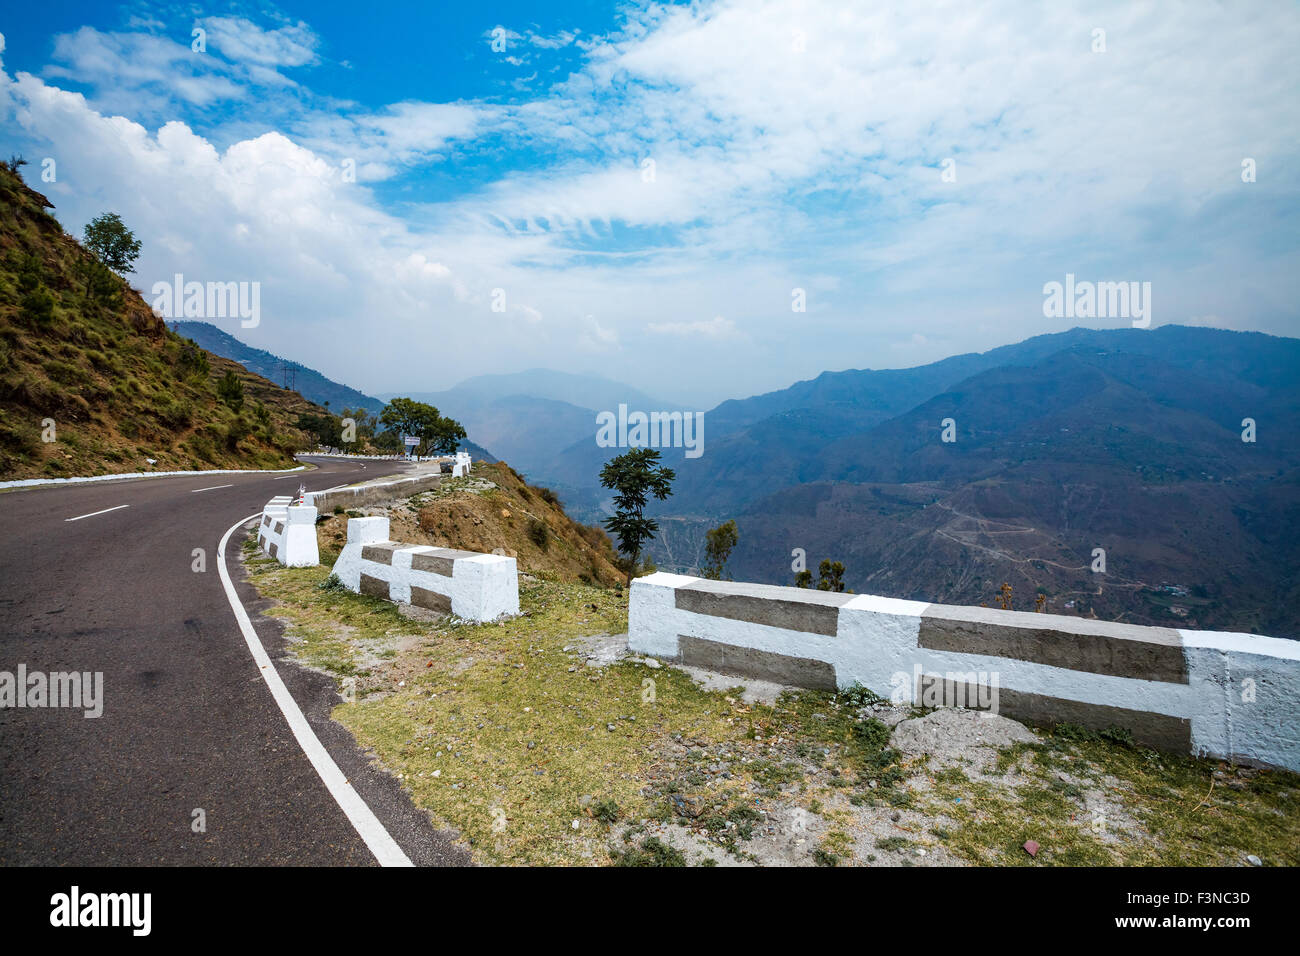 Route de la vallée de Spiti, Himachal Pradesh, Inde Banque D'Images